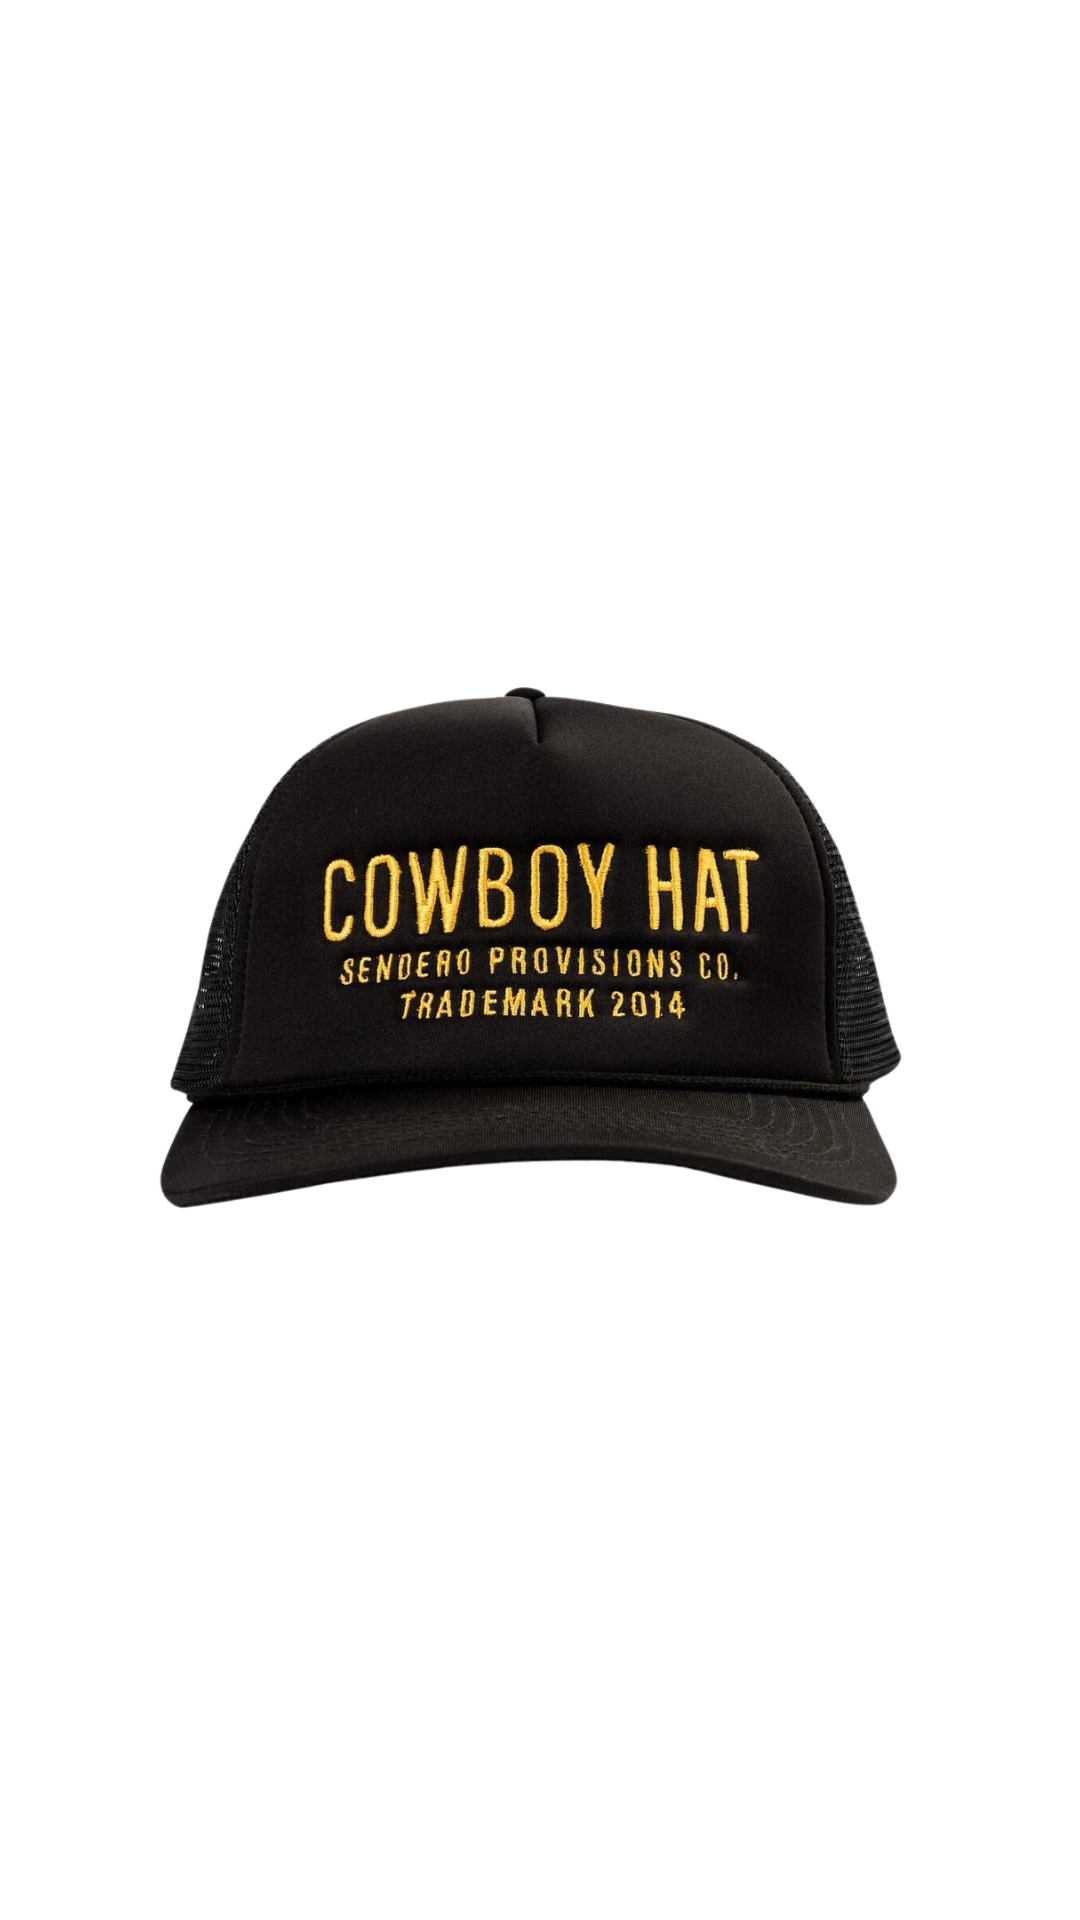 Cowboy Ball Cap